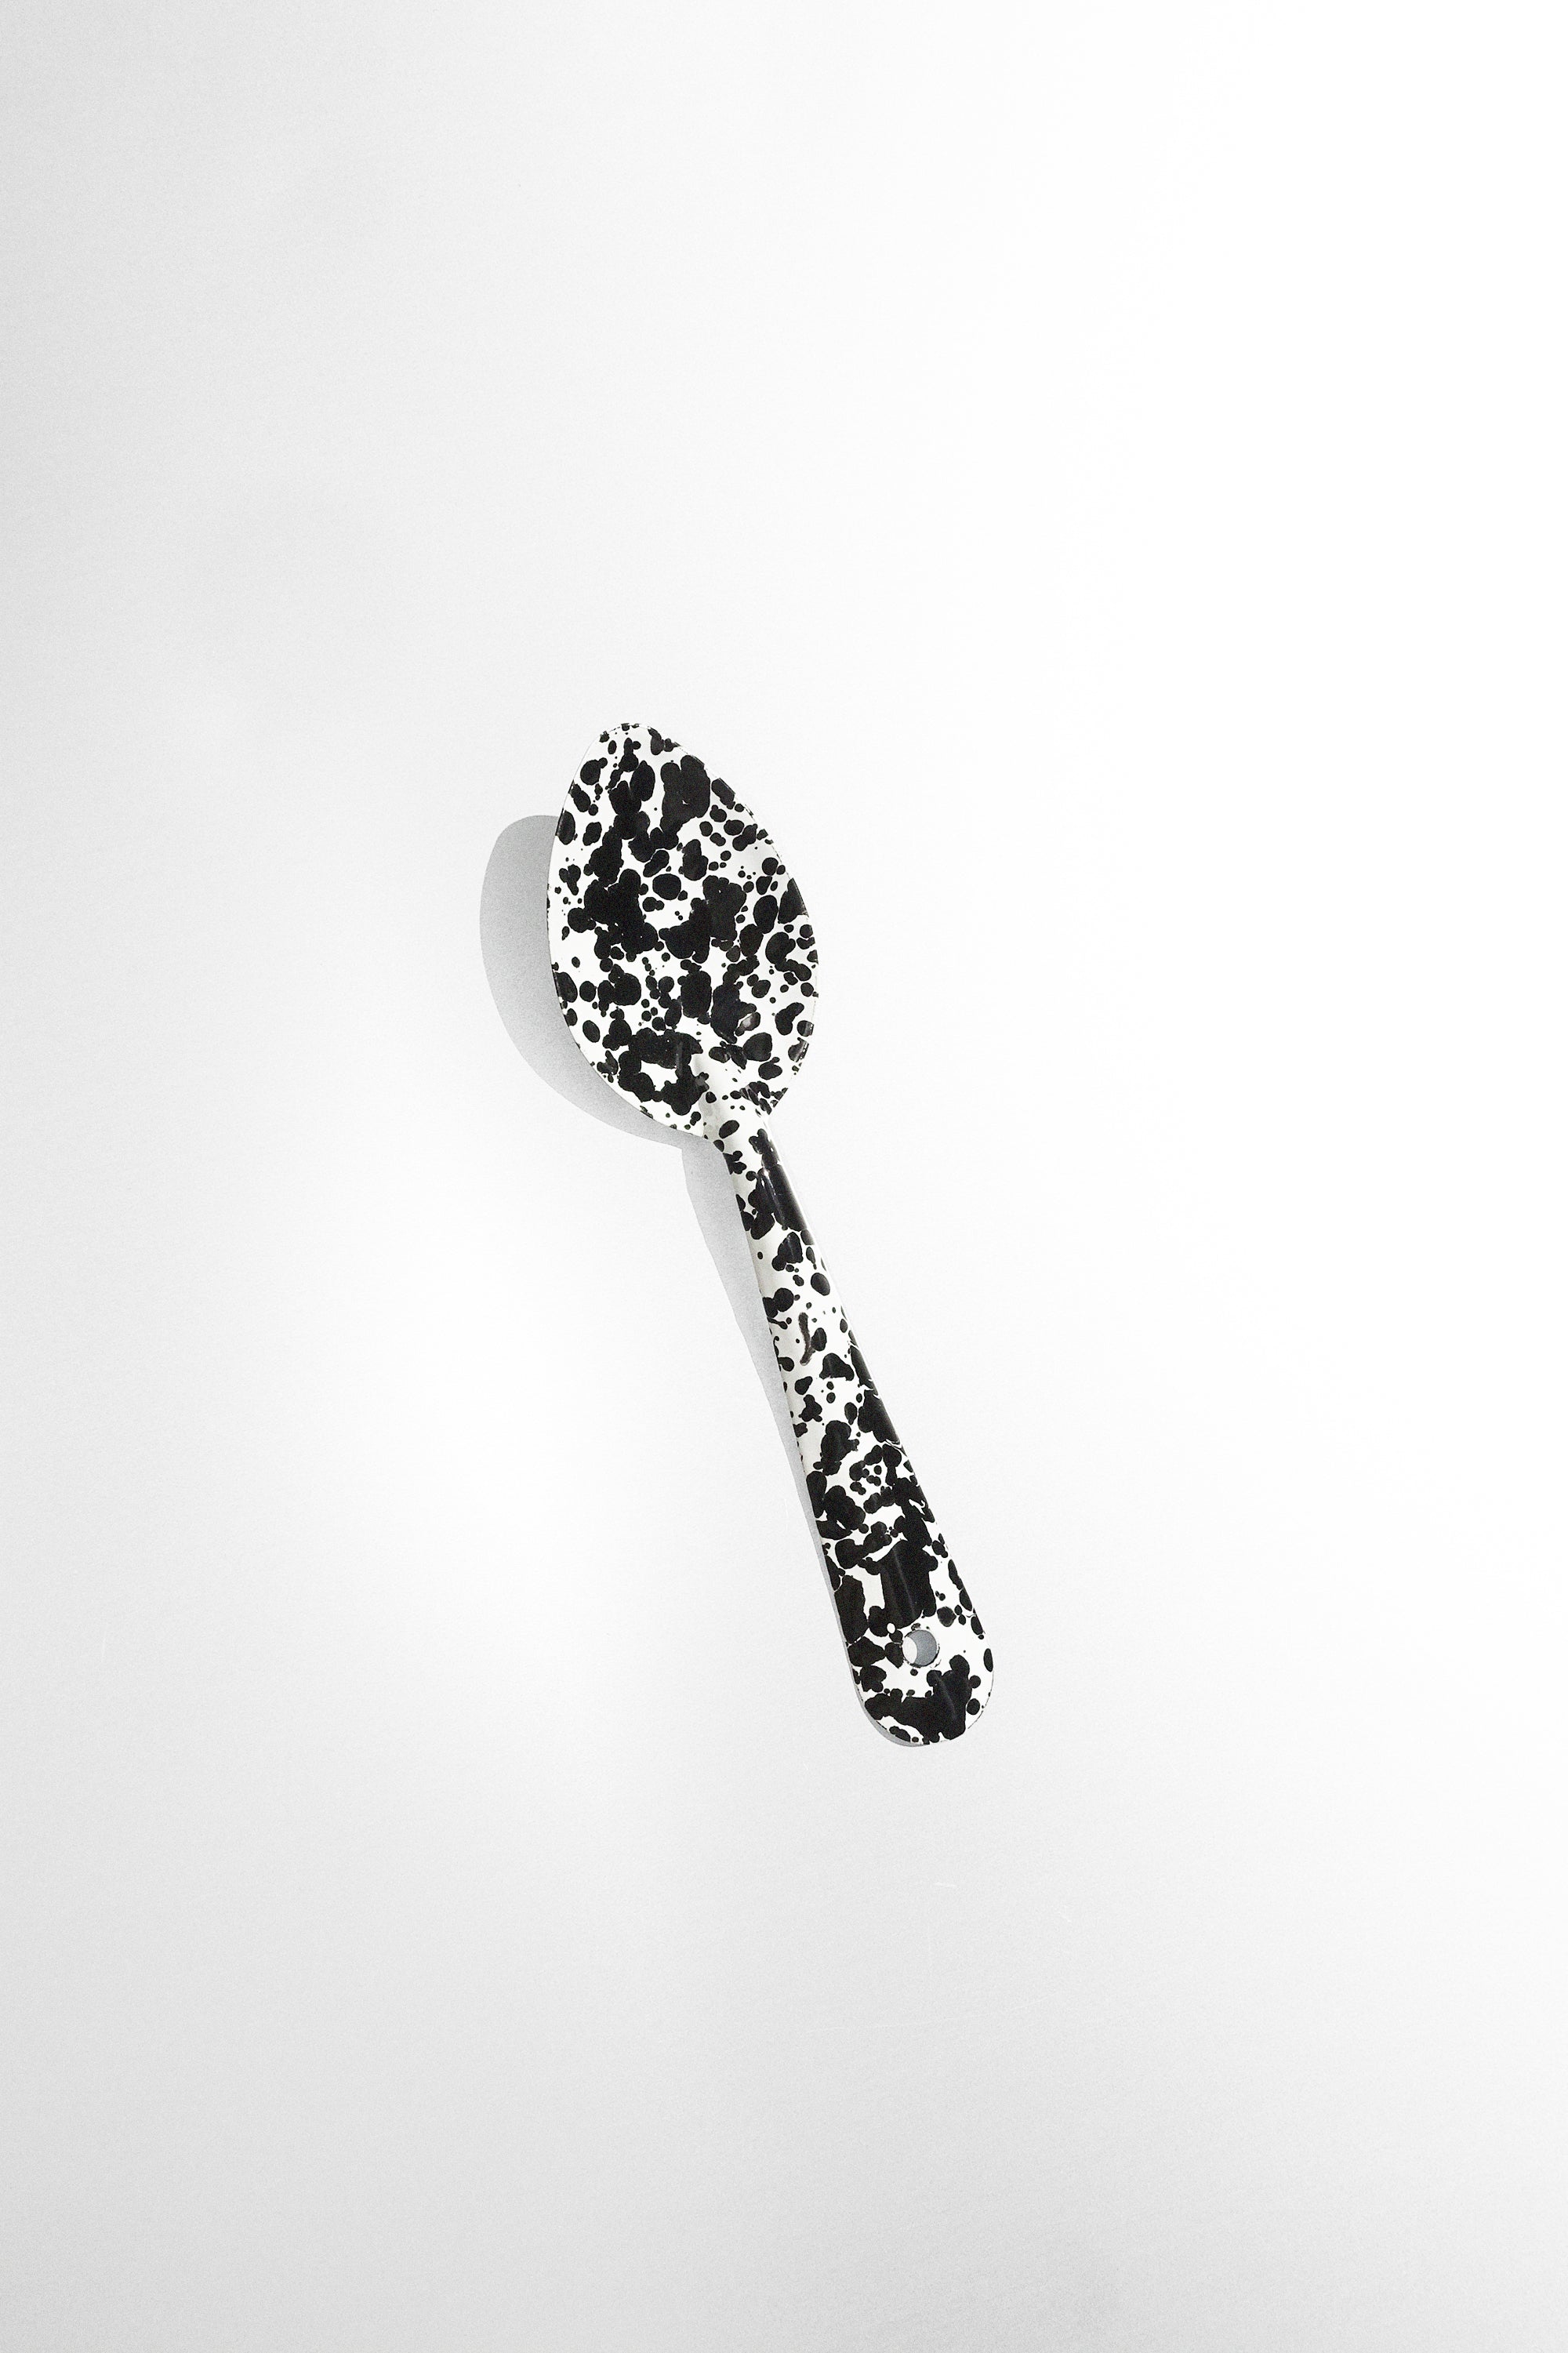 Medium Spoon in Black Splatter